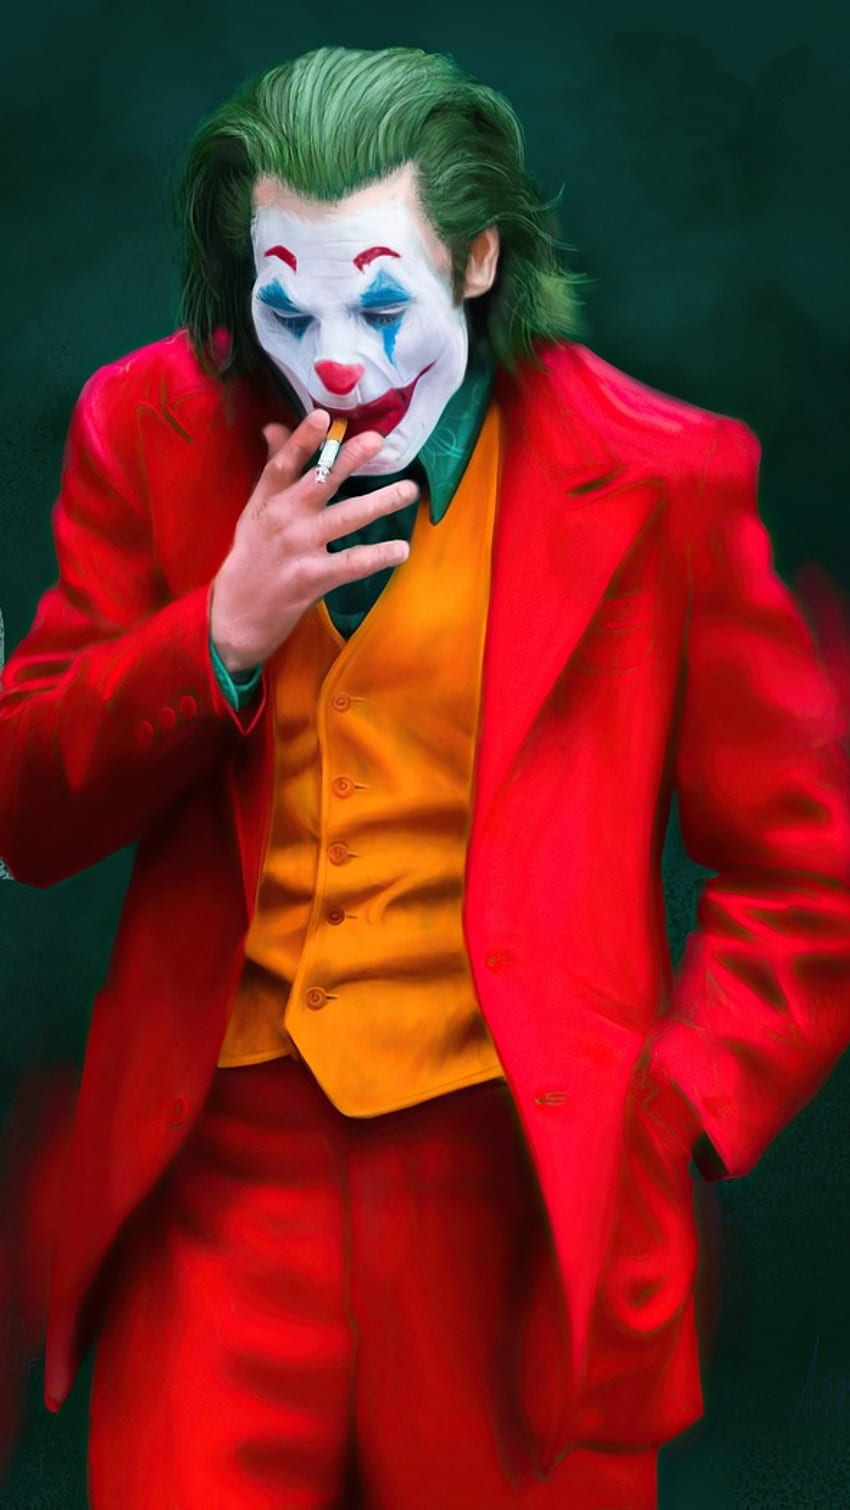 1366x768px, 720P Free download | Joker Smoking, Red Suit, Costume HD ...